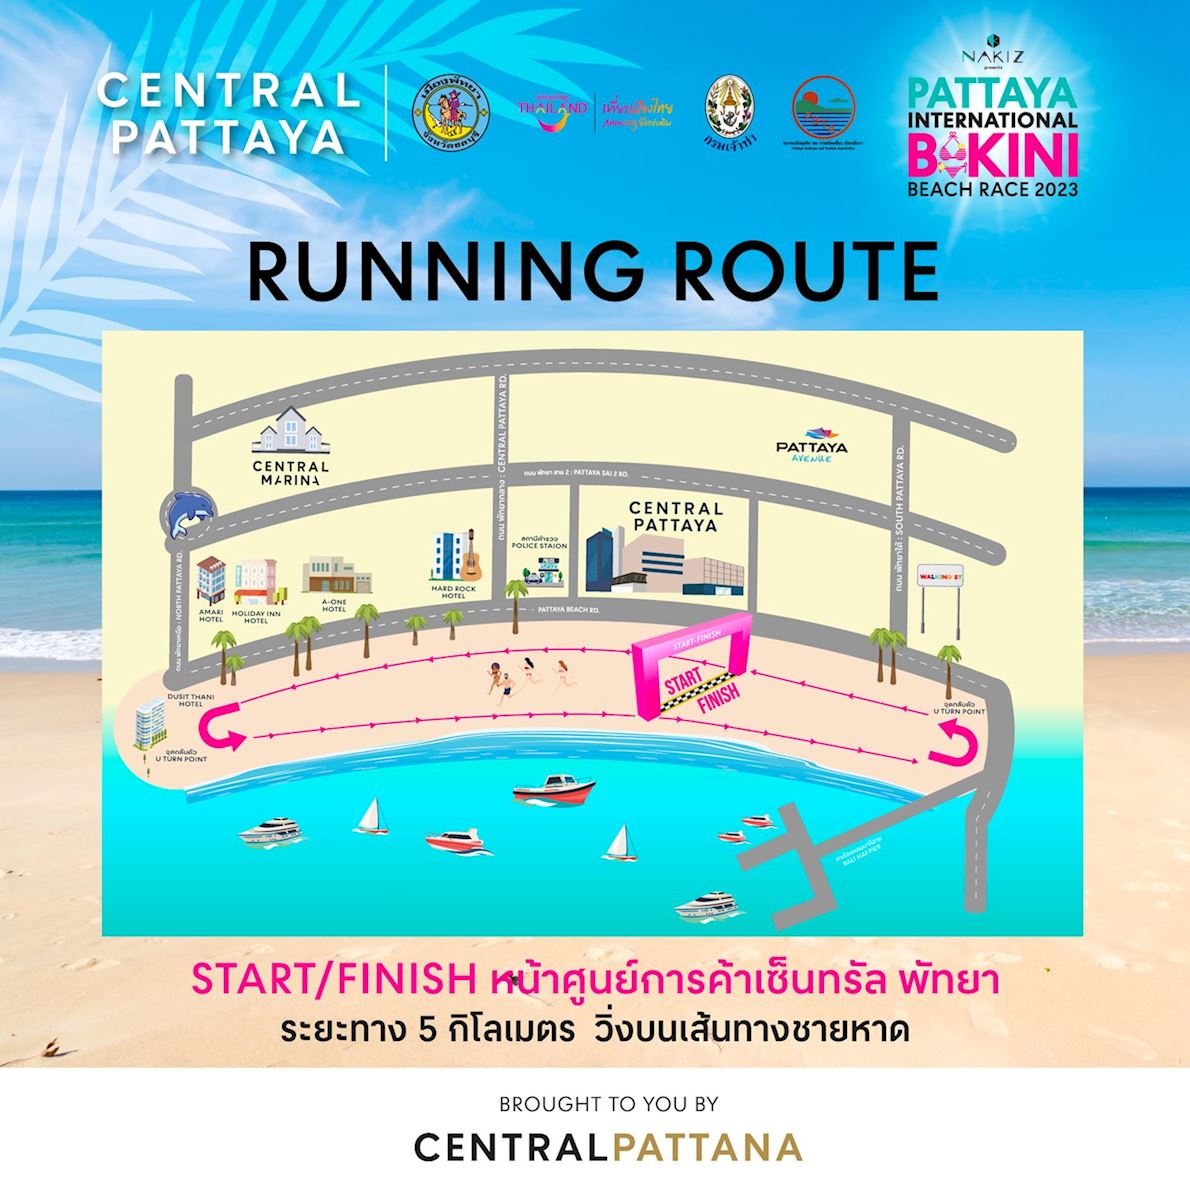 Pattaya International Bikini Beach Race Route Map